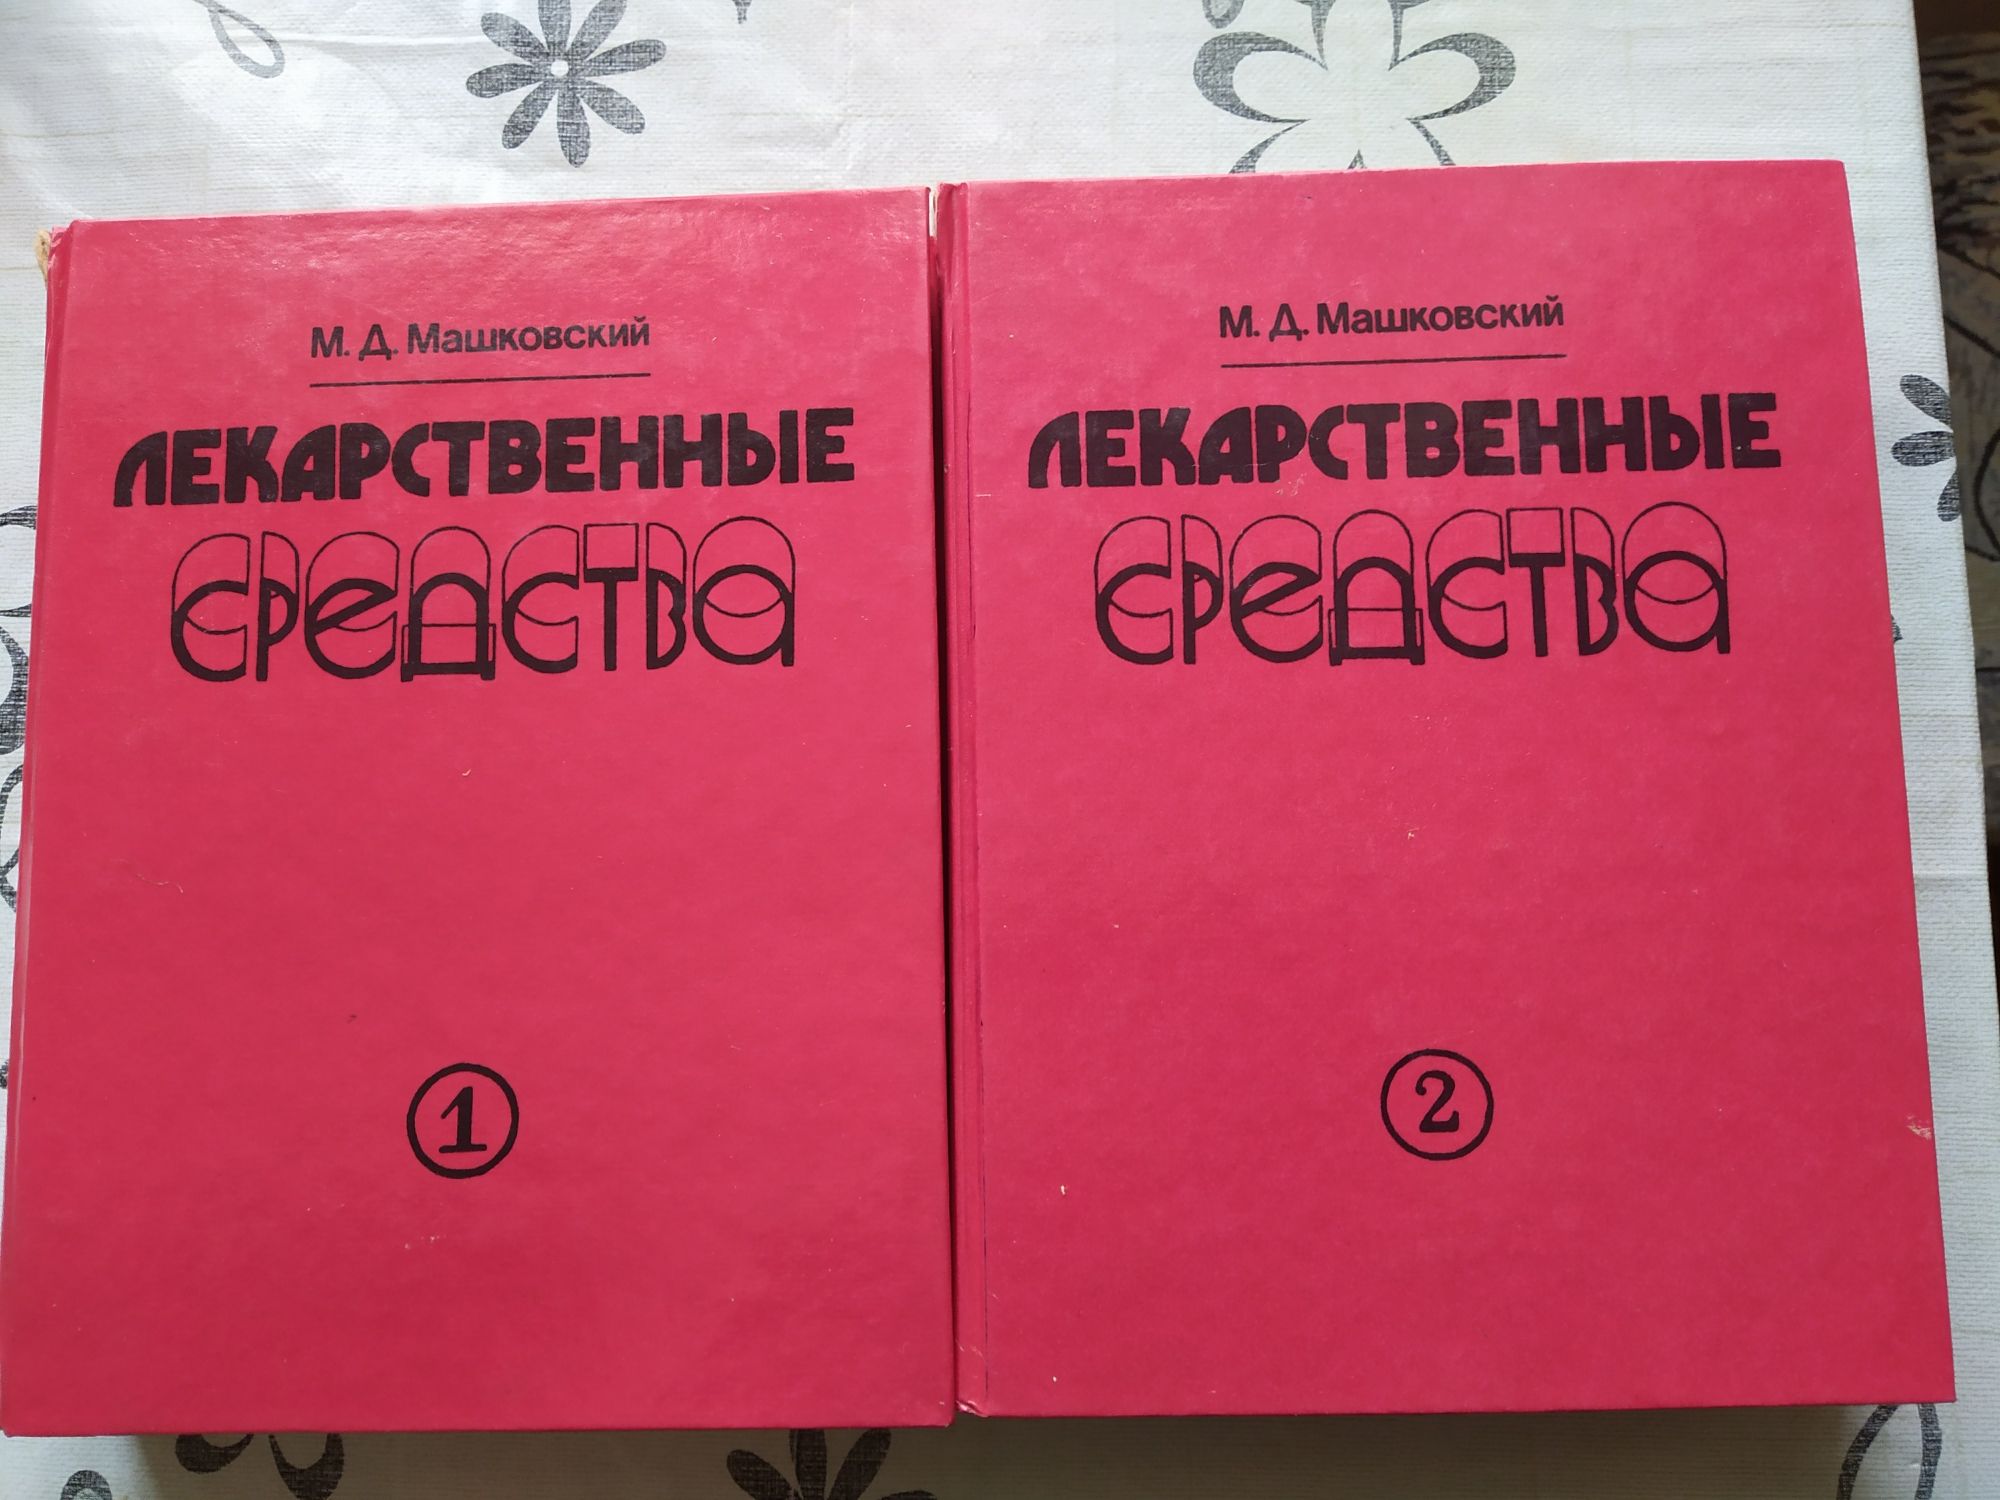 М.Д. Машковский.Лекарственные средства. В двух томах.